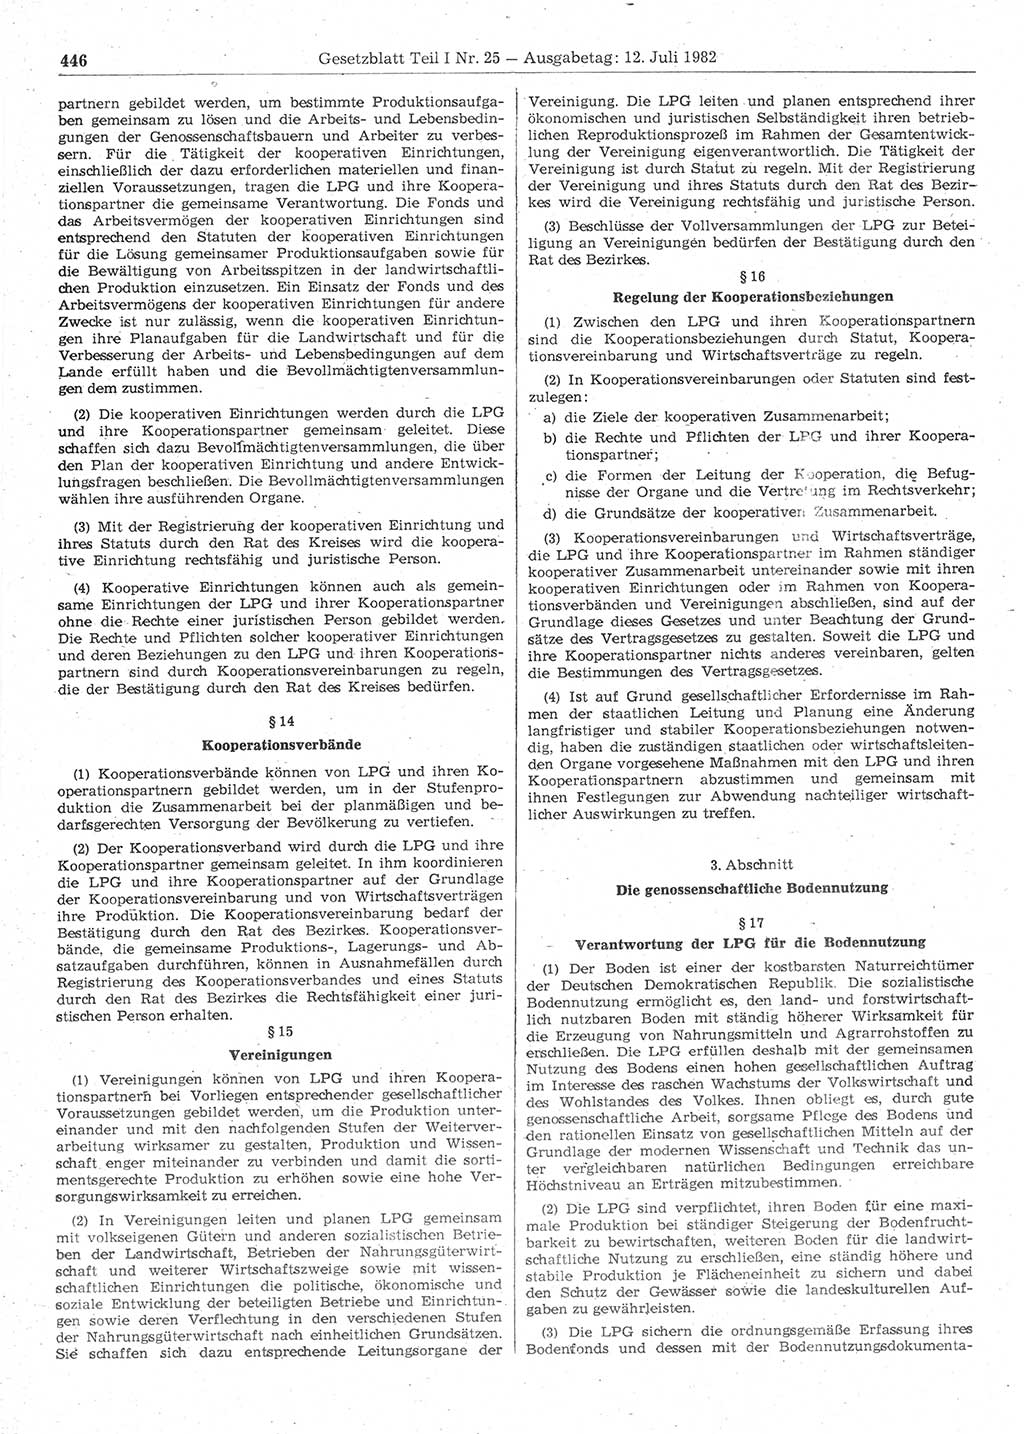 Gesetzblatt (GBl.) der Deutschen Demokratischen Republik (DDR) Teil Ⅰ 1982, Seite 446 (GBl. DDR Ⅰ 1982, S. 446)